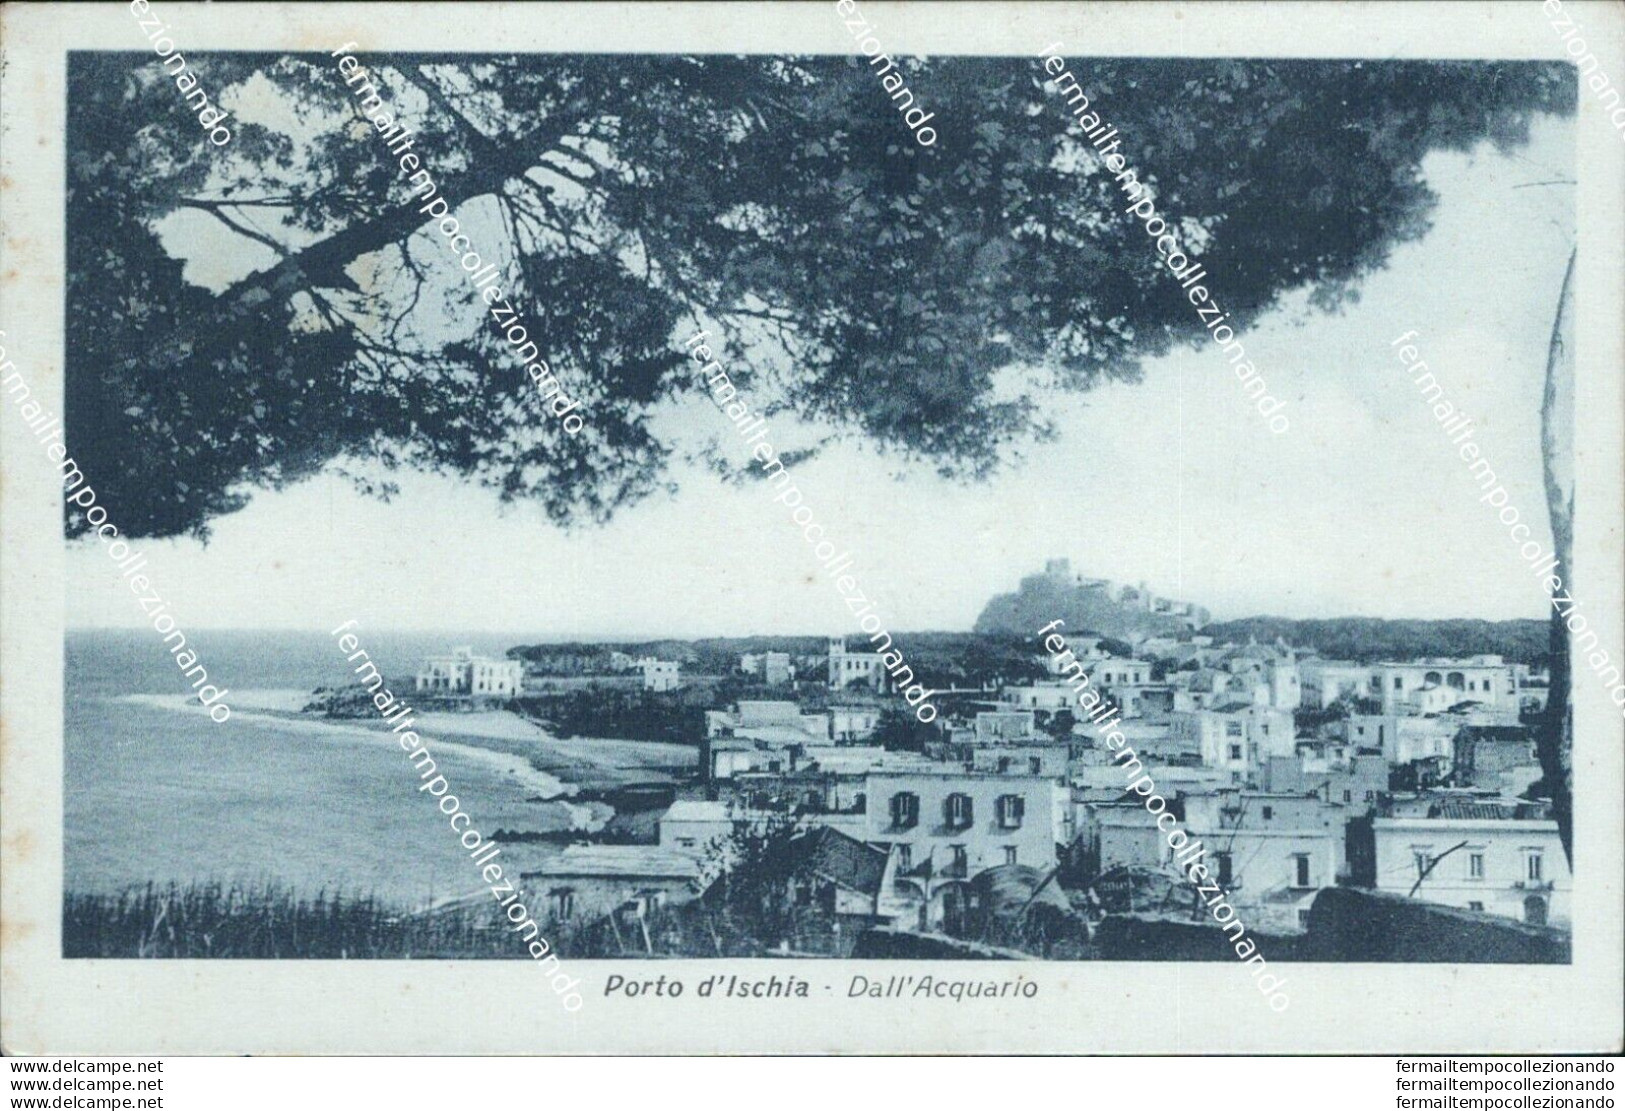 Bh192 Cartolina Porto D'ischia Dall'acquario Provincia Di Napoli - Napoli (Neapel)